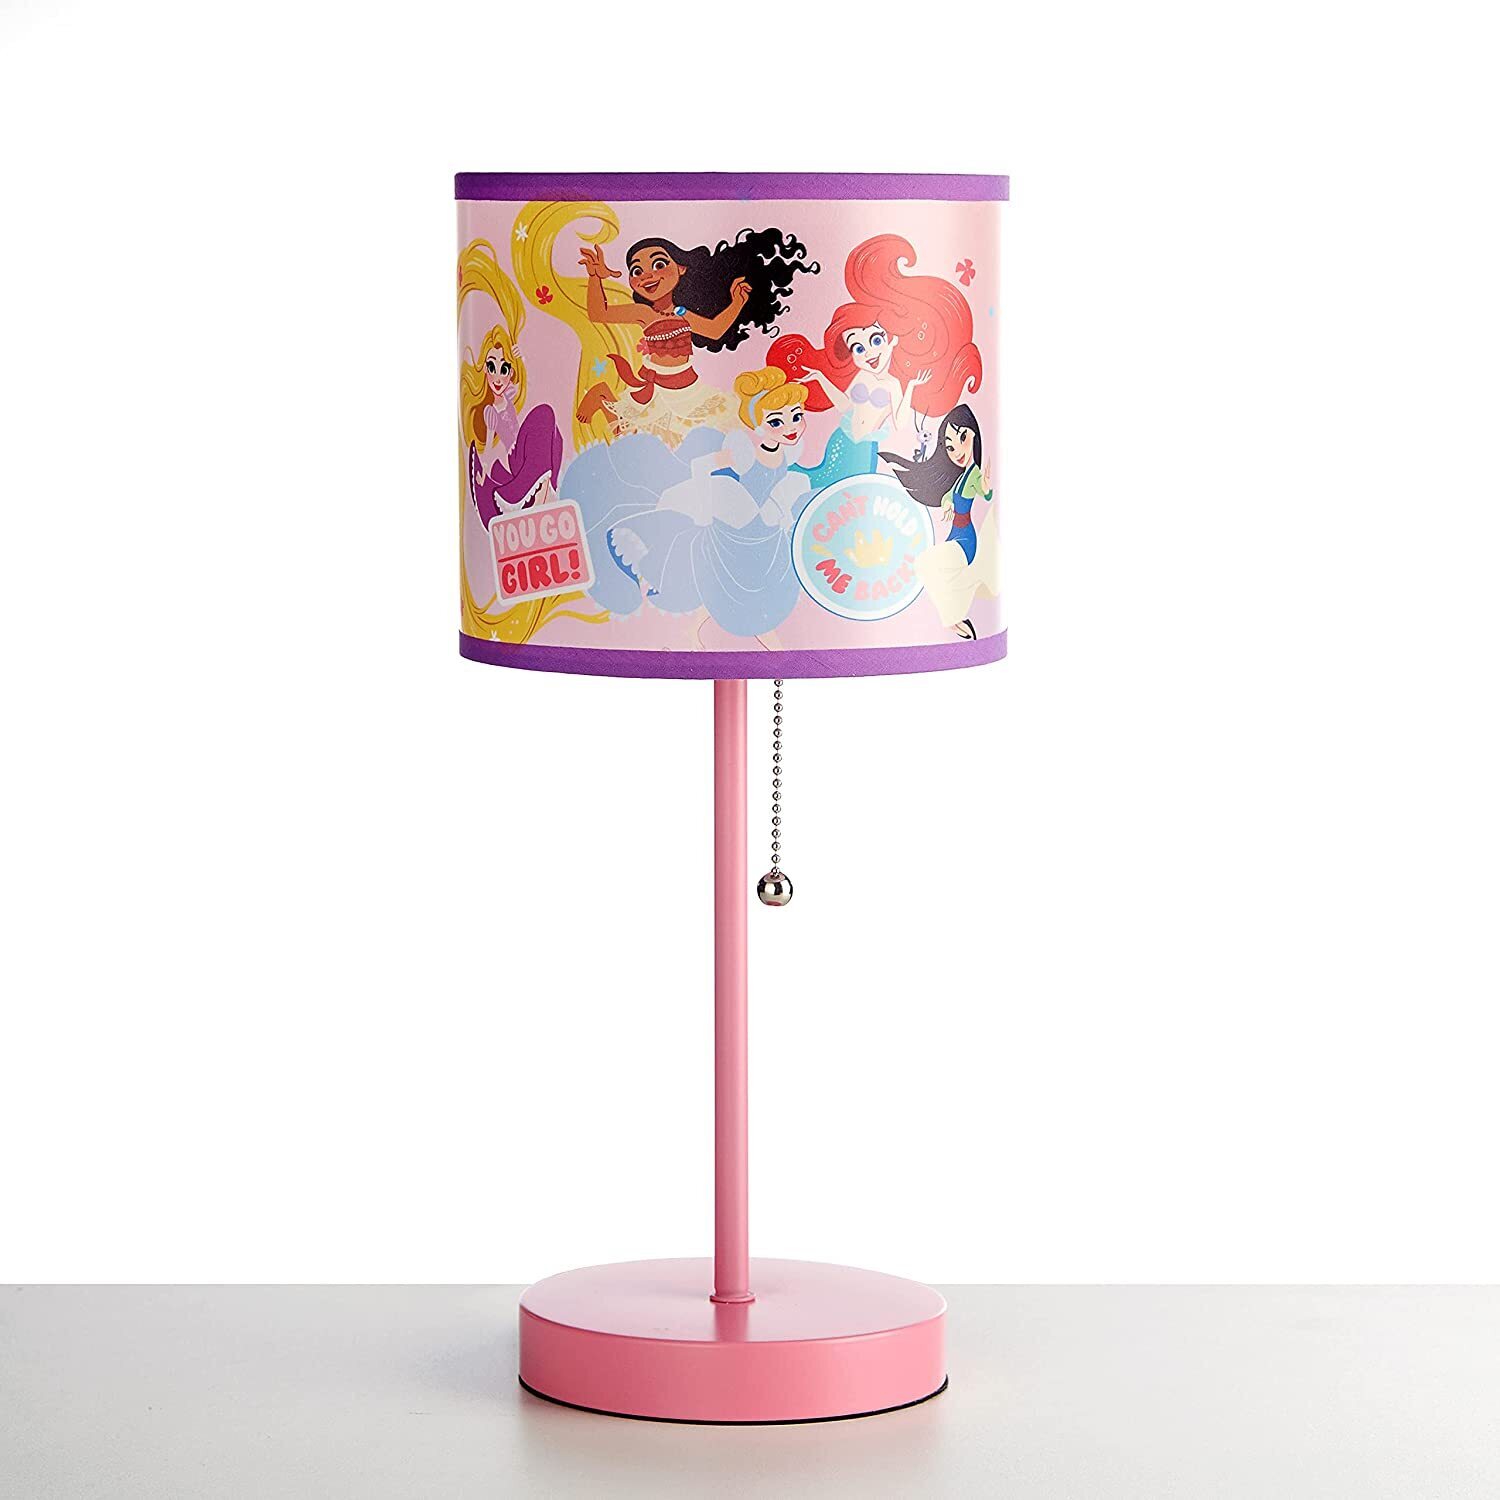 Functional Disney Princess Lamp